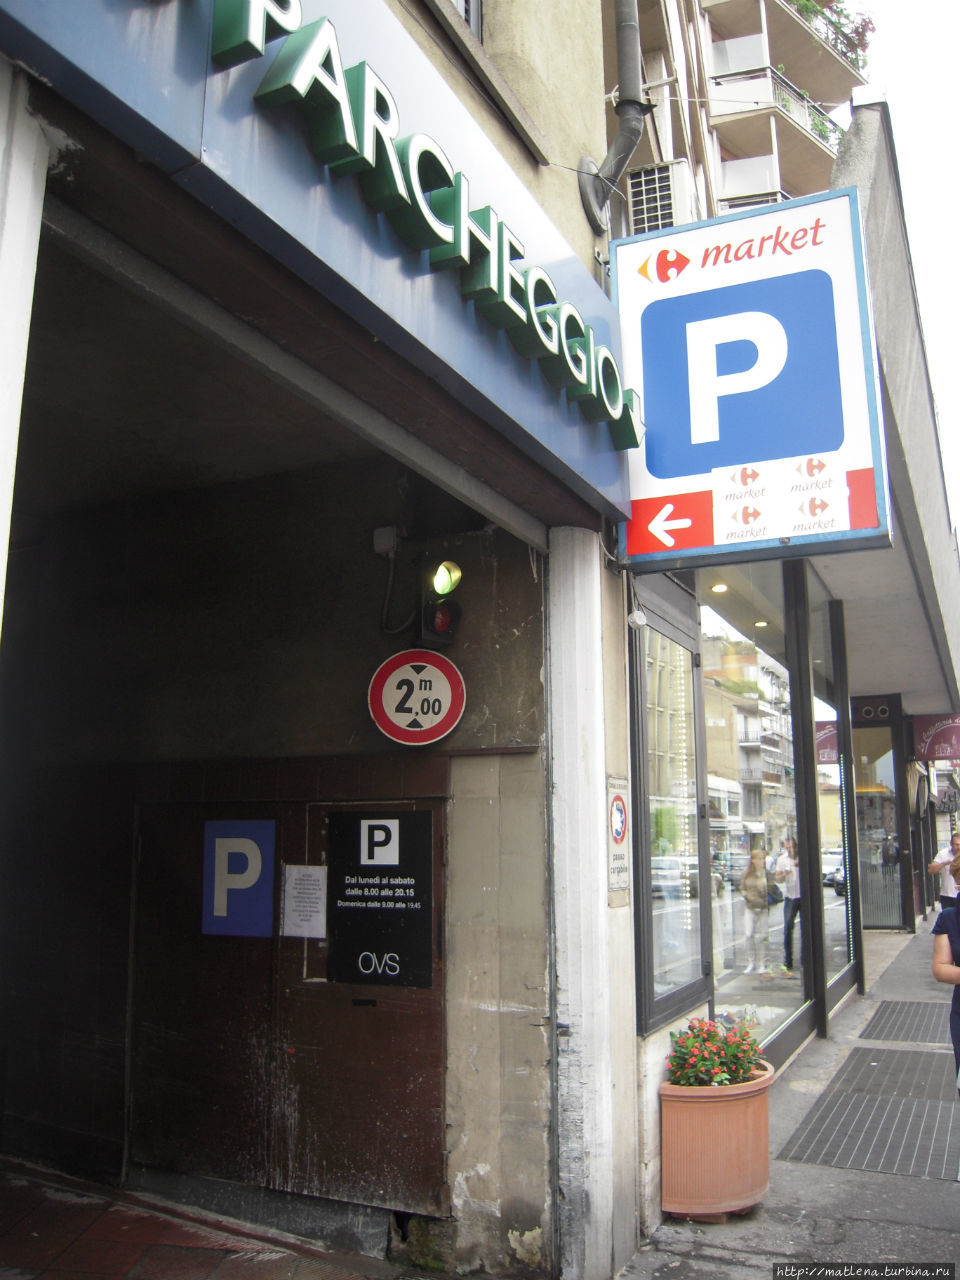 Указатель на парковку и на Супермаркет Бергамо, Италия